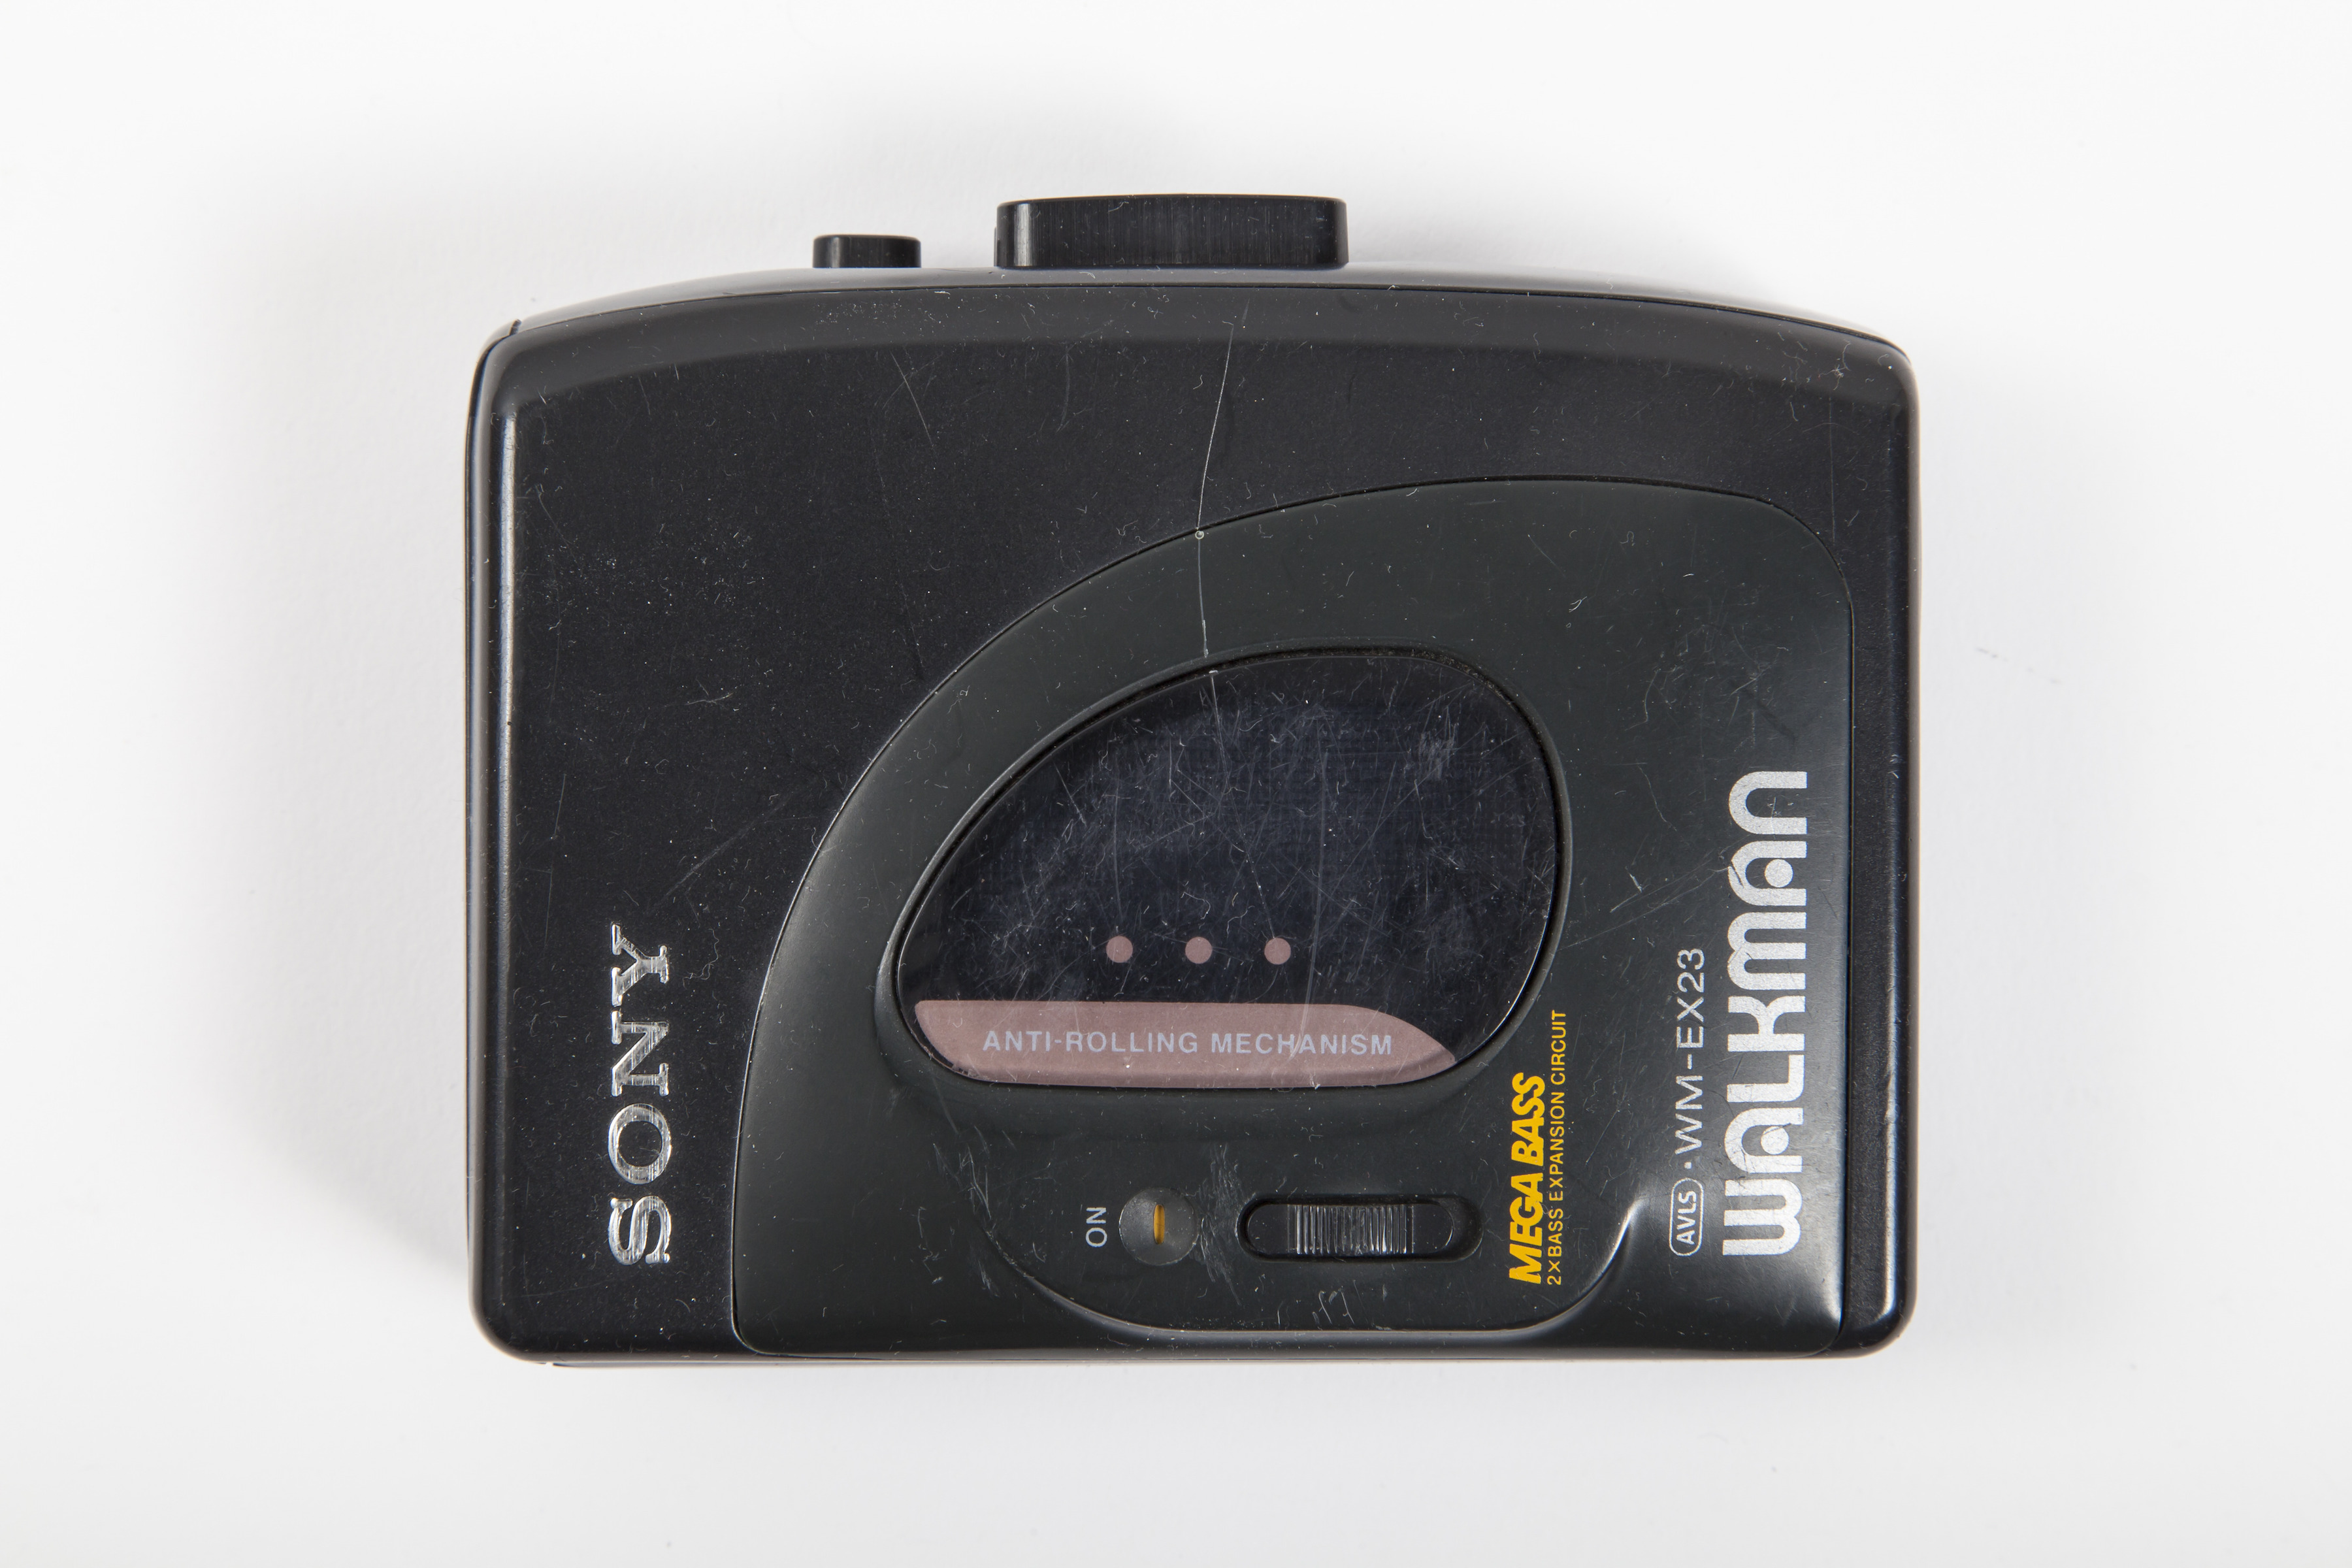 Sony Walkman   (Photo by Bildquelleullstein bild via Getty Images)